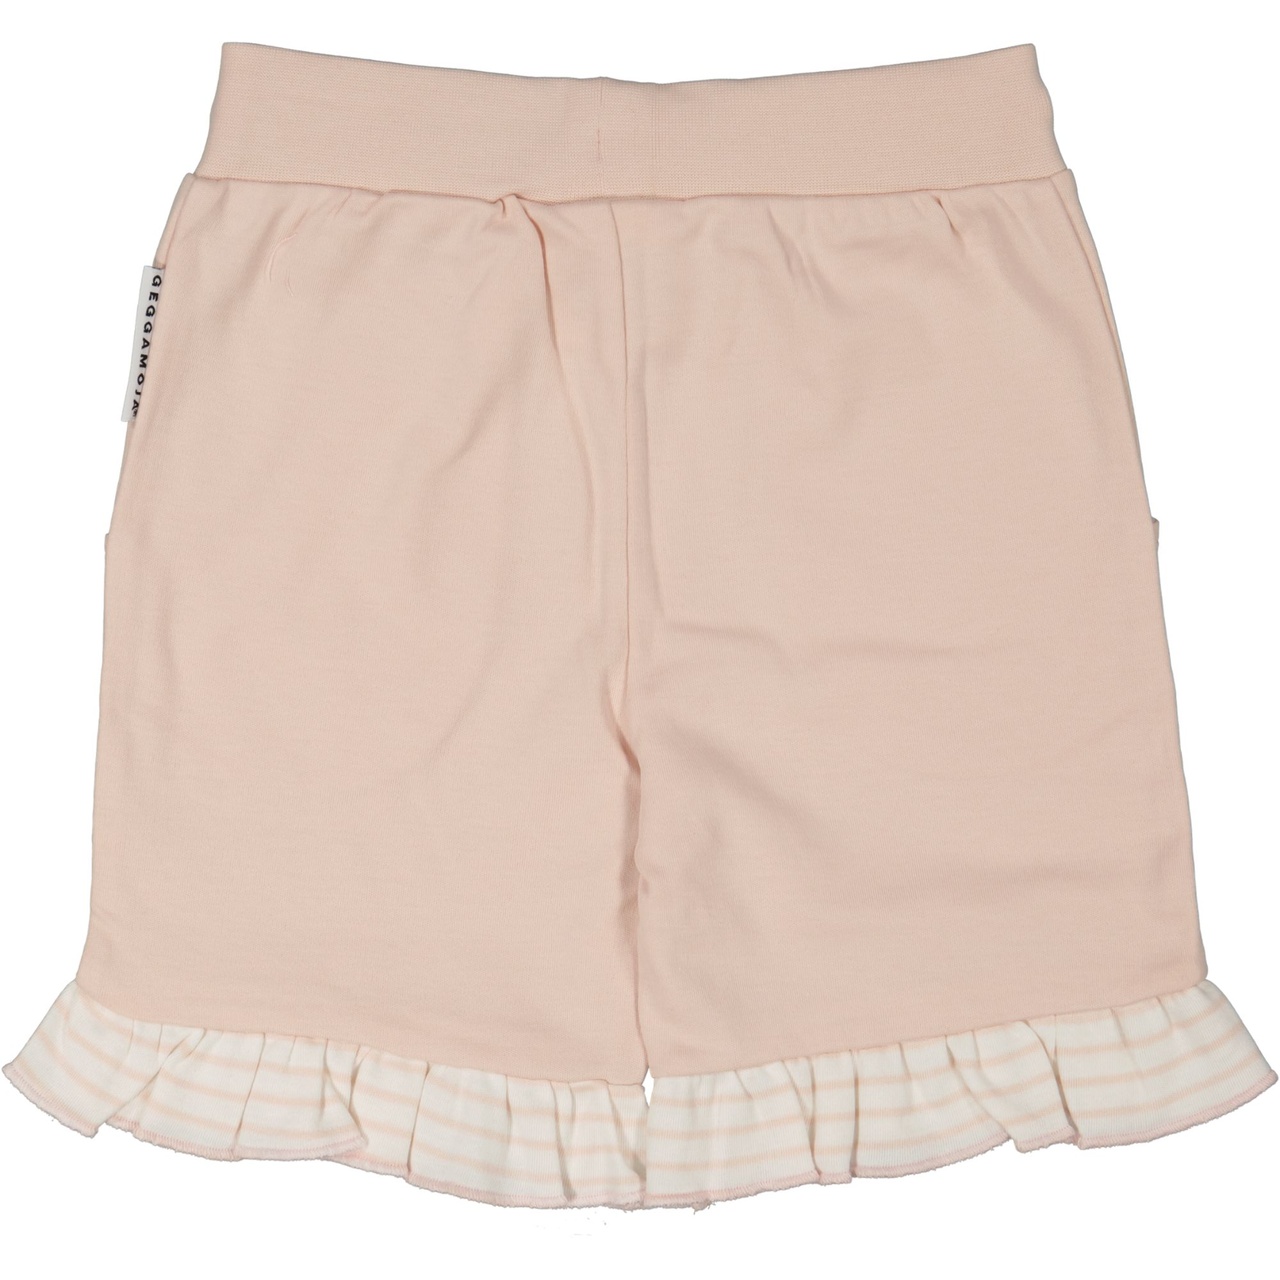 Flounce shorts Light pink 62/68